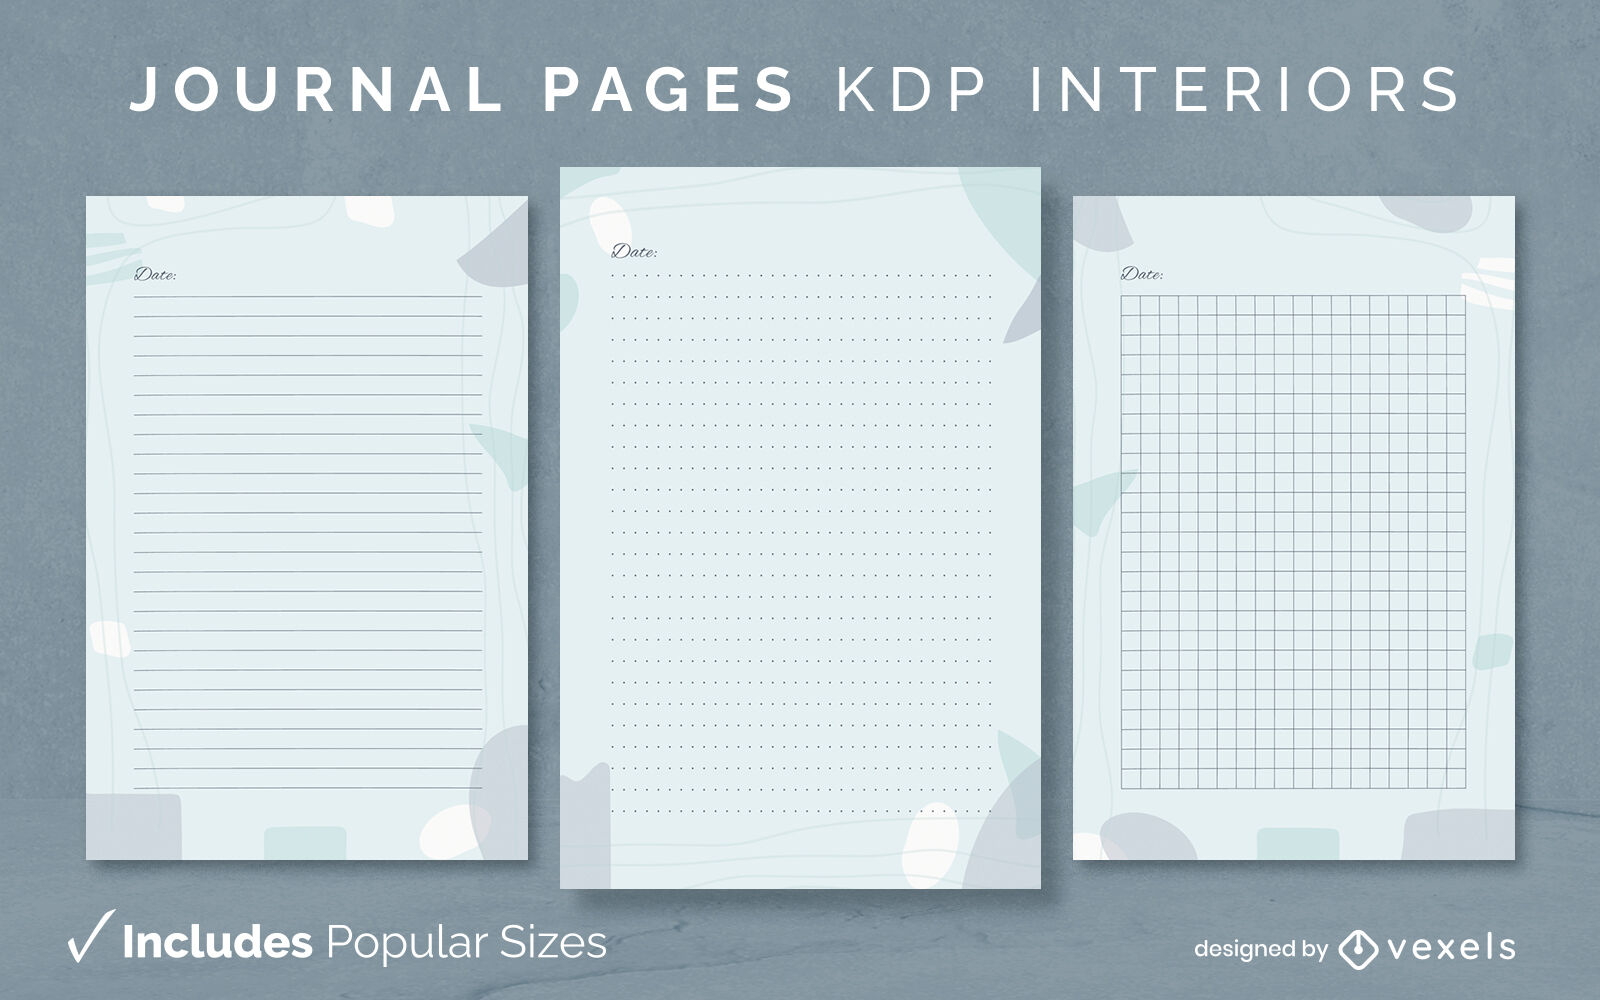 Organische abstrakte Journalvorlage KDP Interior Design